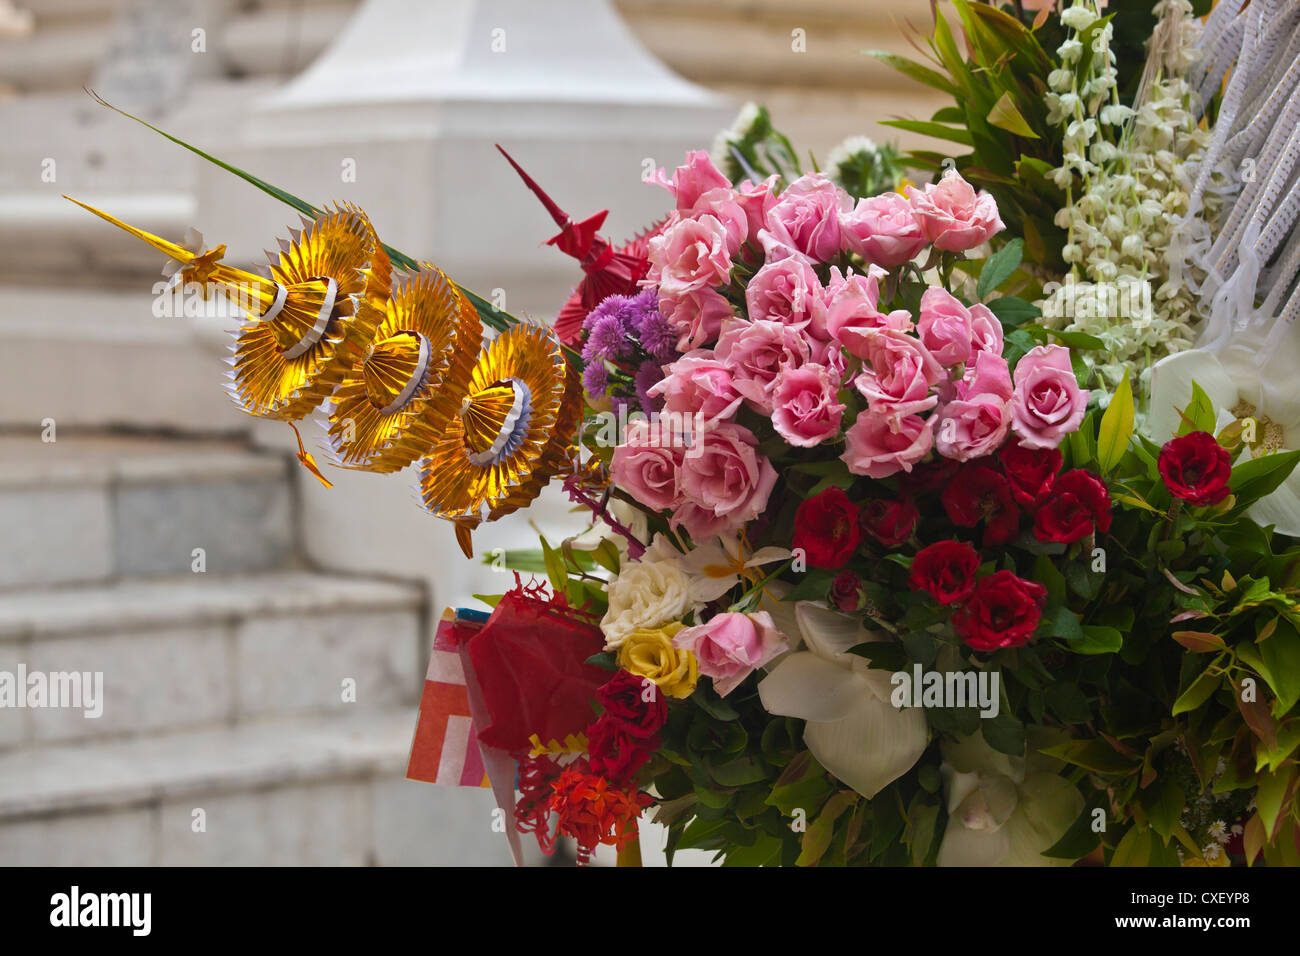 Offres de fleurs sont répandus à la PAYA SHWEDAGON PAGODA ou qui date de l'époque du Bouddha - Yangon, Myanmar Banque D'Images